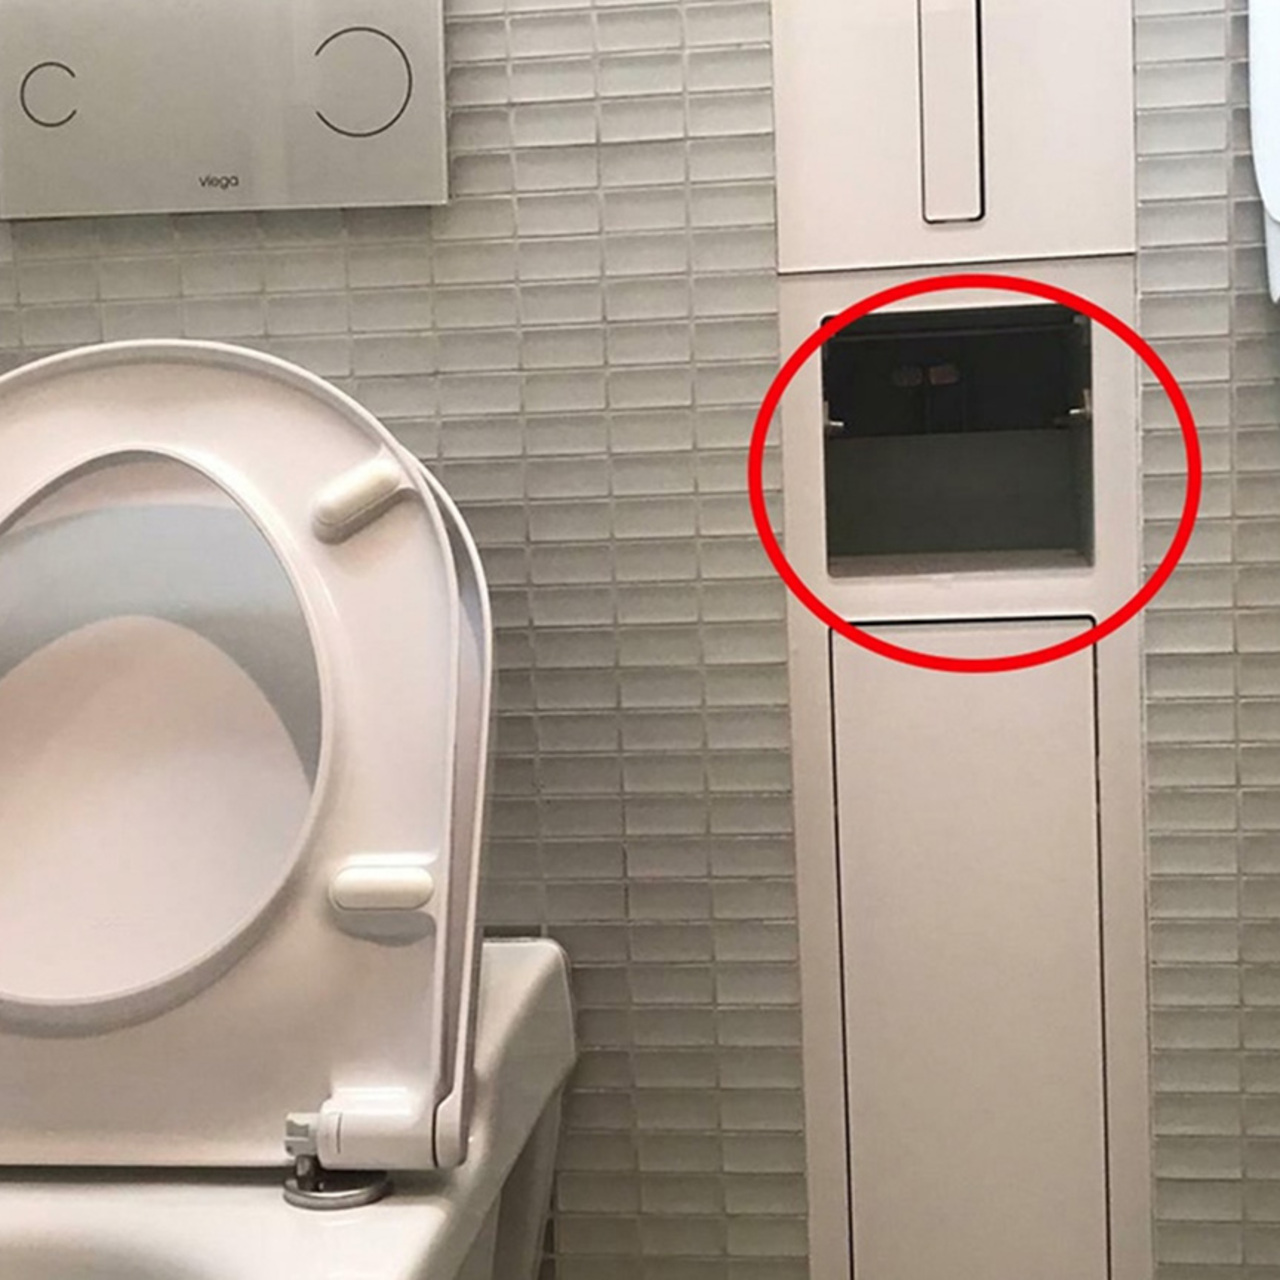 В туалете здания ГИТИСа обнаружили скрытую камеру